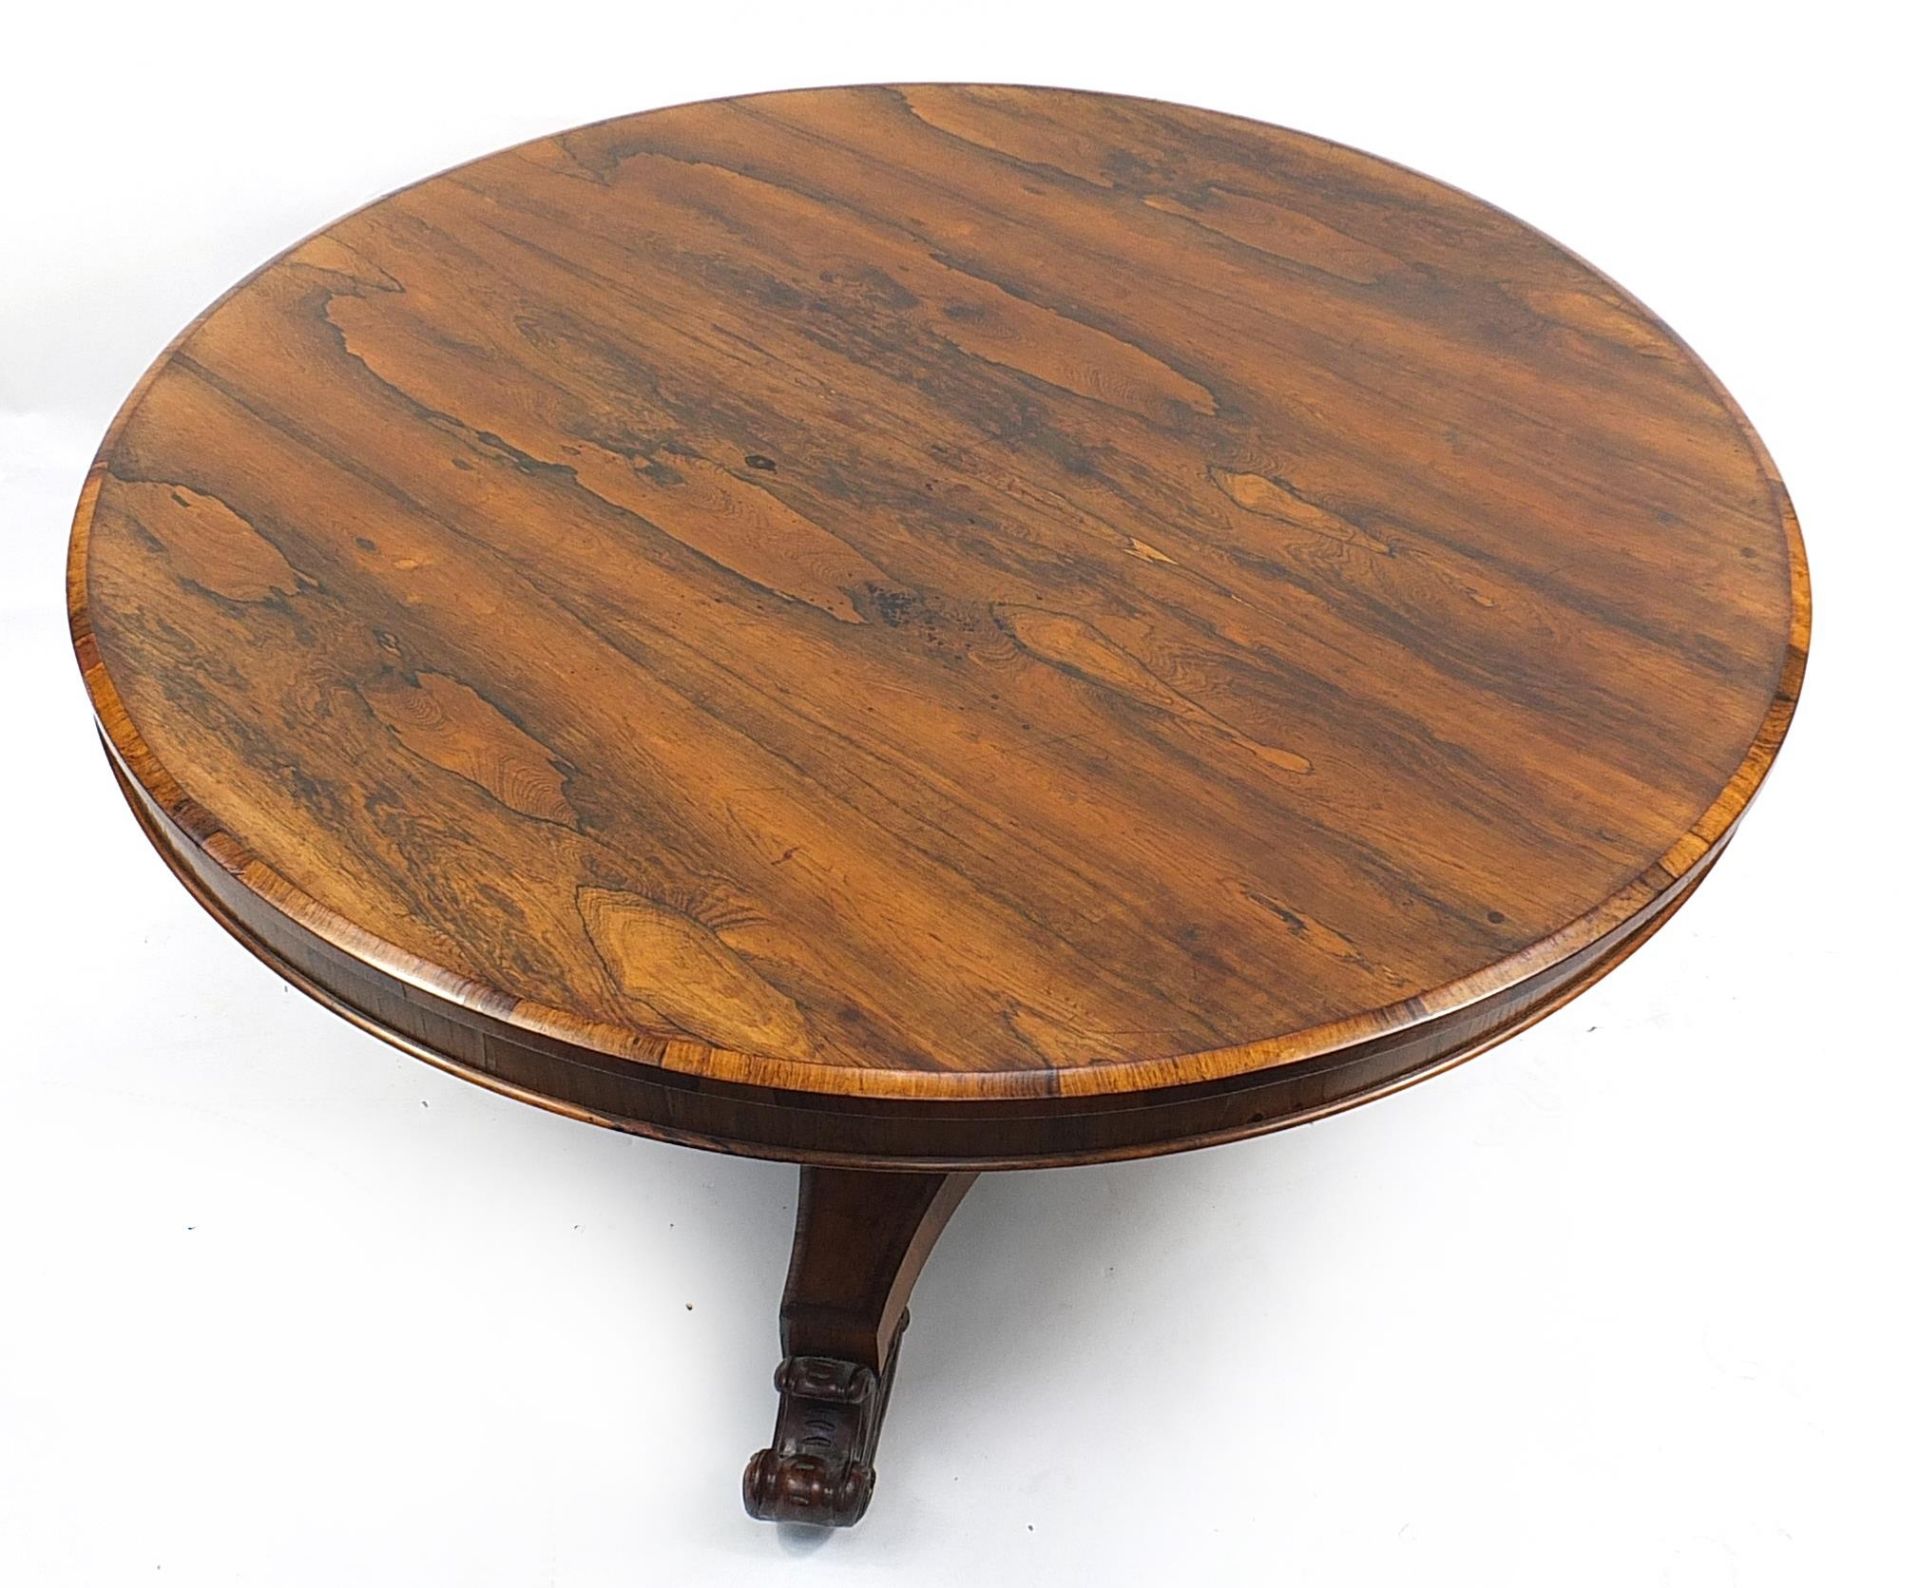 Victorian rosewood tilt top breakfast table, 70cm high x 136cm in diameter - Image 2 of 3